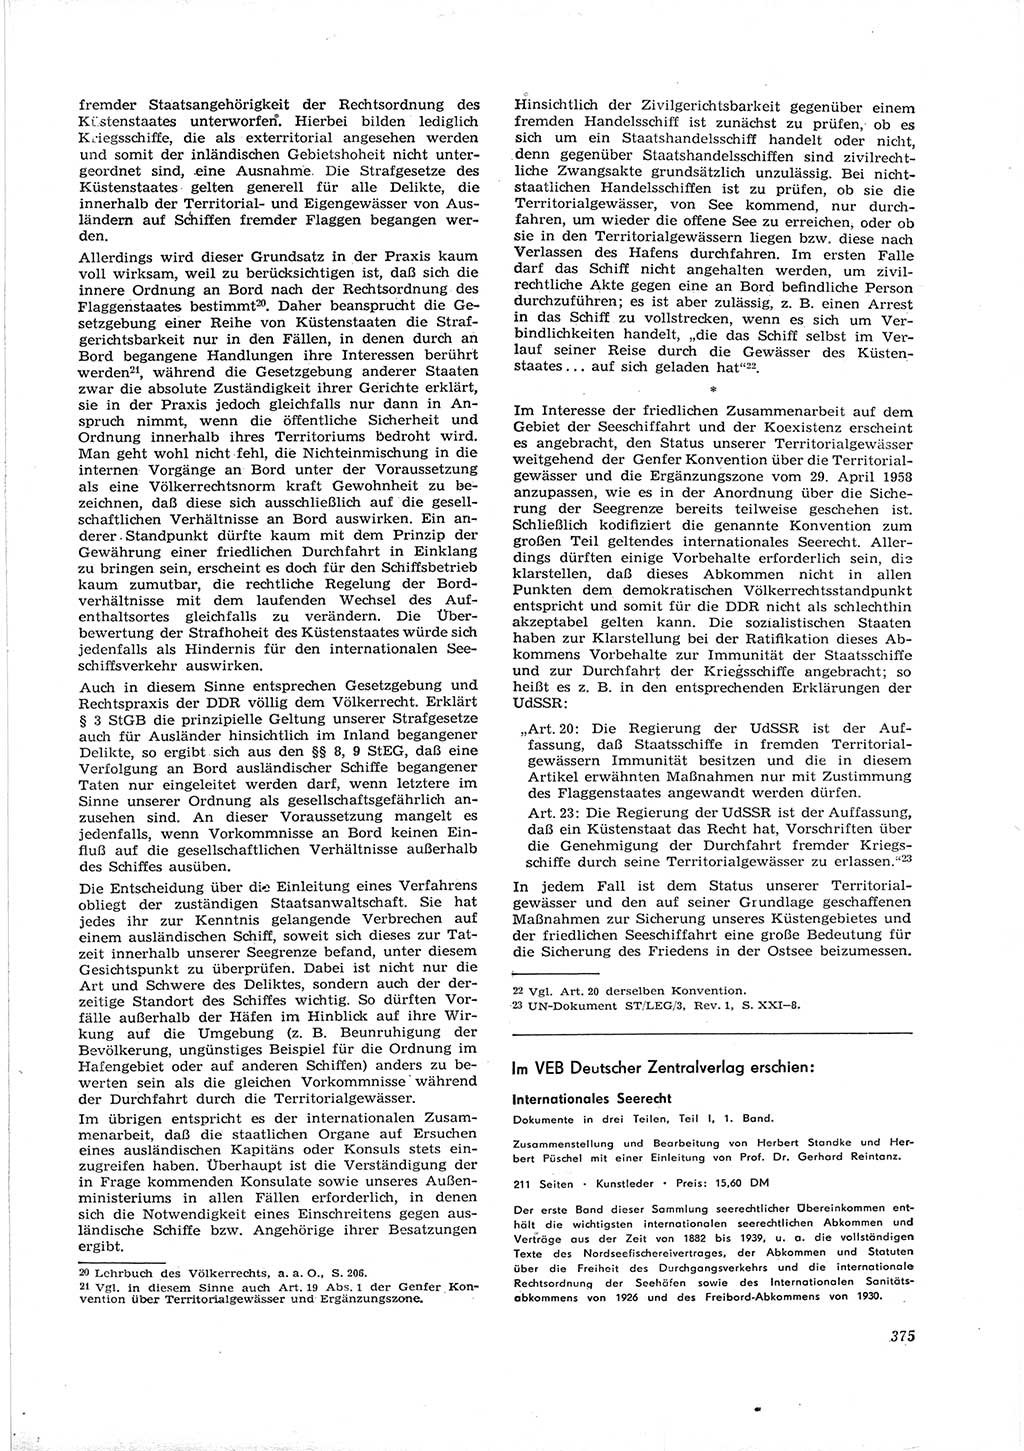 Neue Justiz (NJ), Zeitschrift für Recht und Rechtswissenschaft [Deutsche Demokratische Republik (DDR)], 16. Jahrgang 1962, Seite 375 (NJ DDR 1962, S. 375)